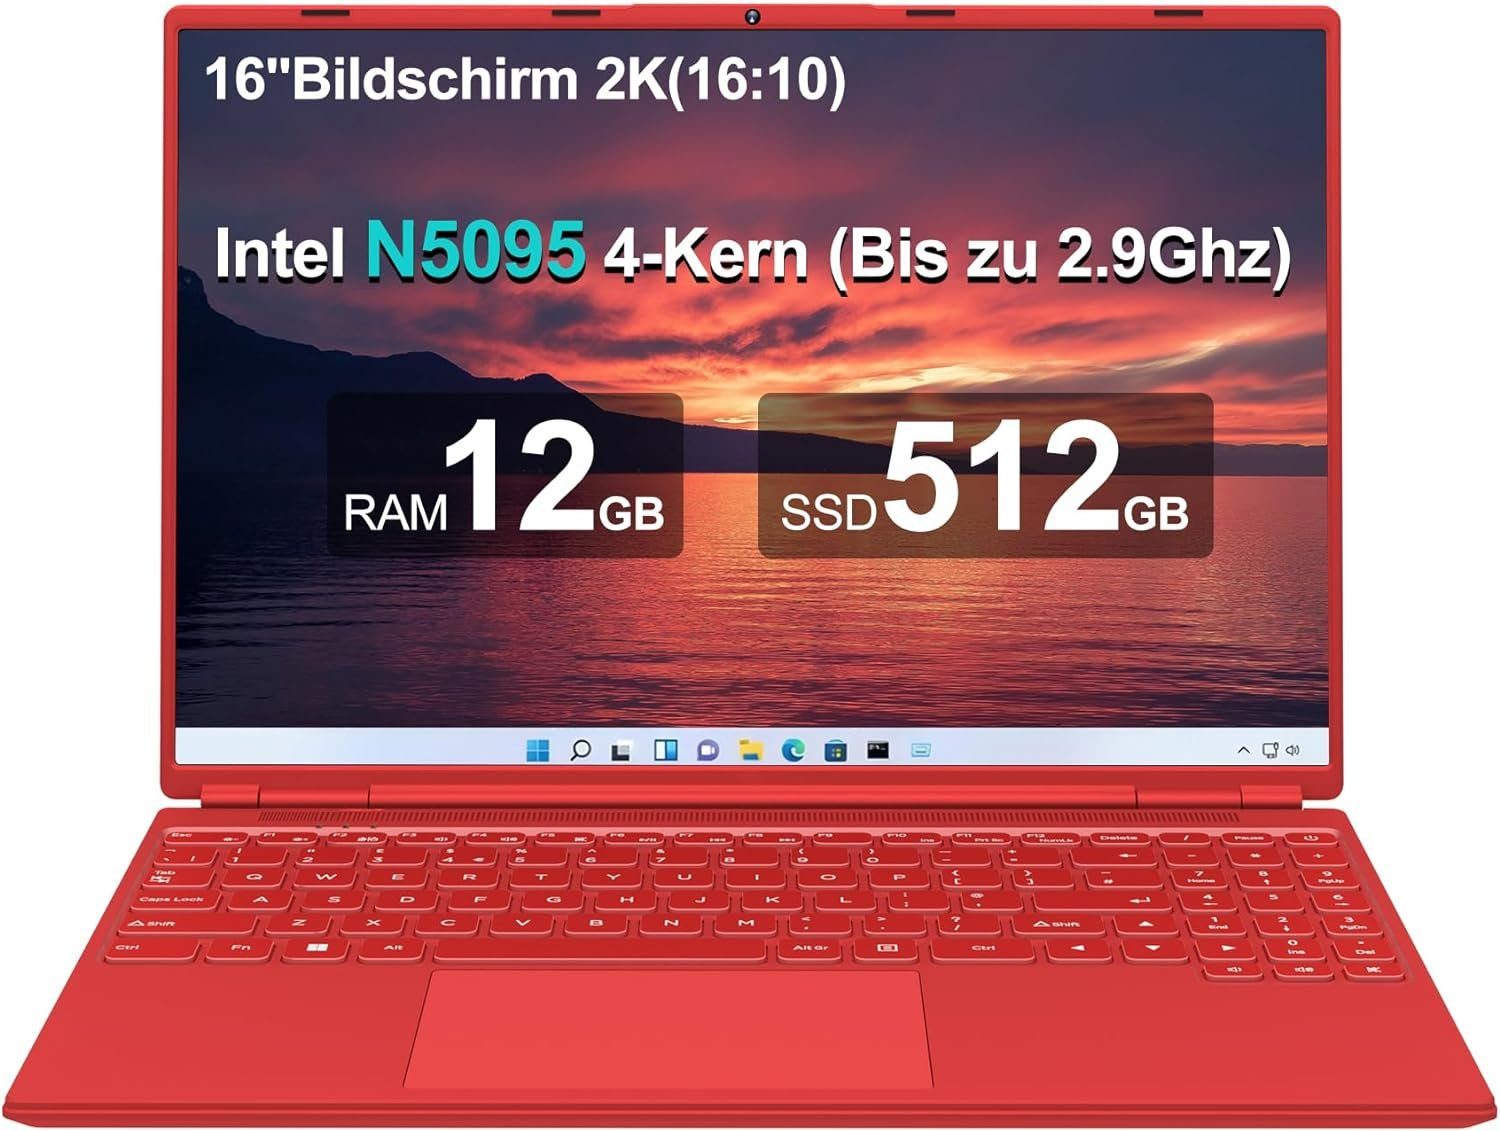 AOCWEI A6 Notebook (Intel Celeron N5095, UHD 600, 512 GB SSD, FHD 2,9 GHz Speicherplatz bieten beeindruckende Darstellung schnellen)